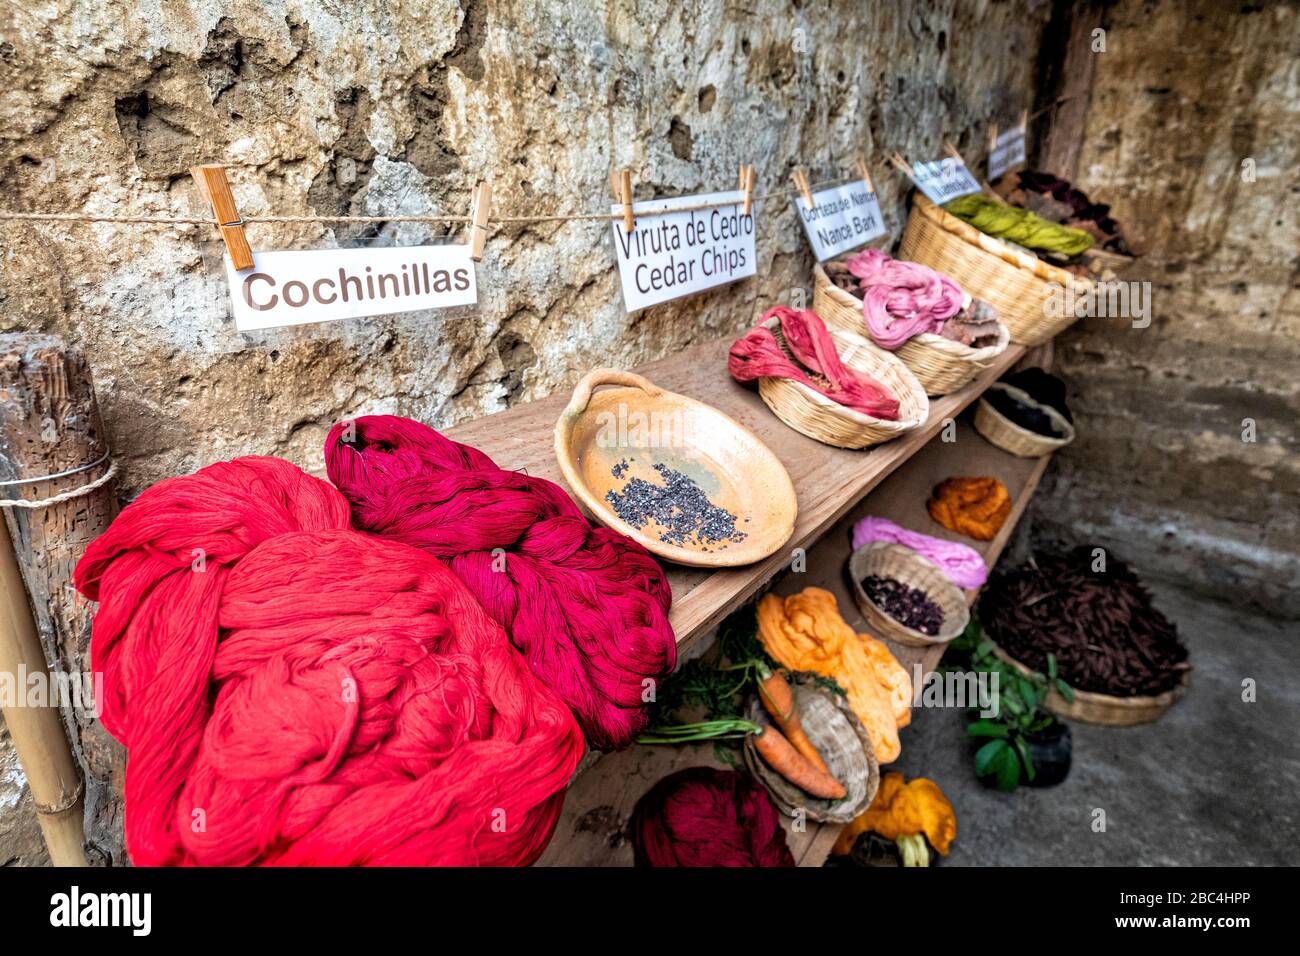 Naturfarbstoff, der in einer Webergenossenschaft in San Juan am Ufer des Atitlan-Sees in Guatemala ausgestellt wird. Stockfoto